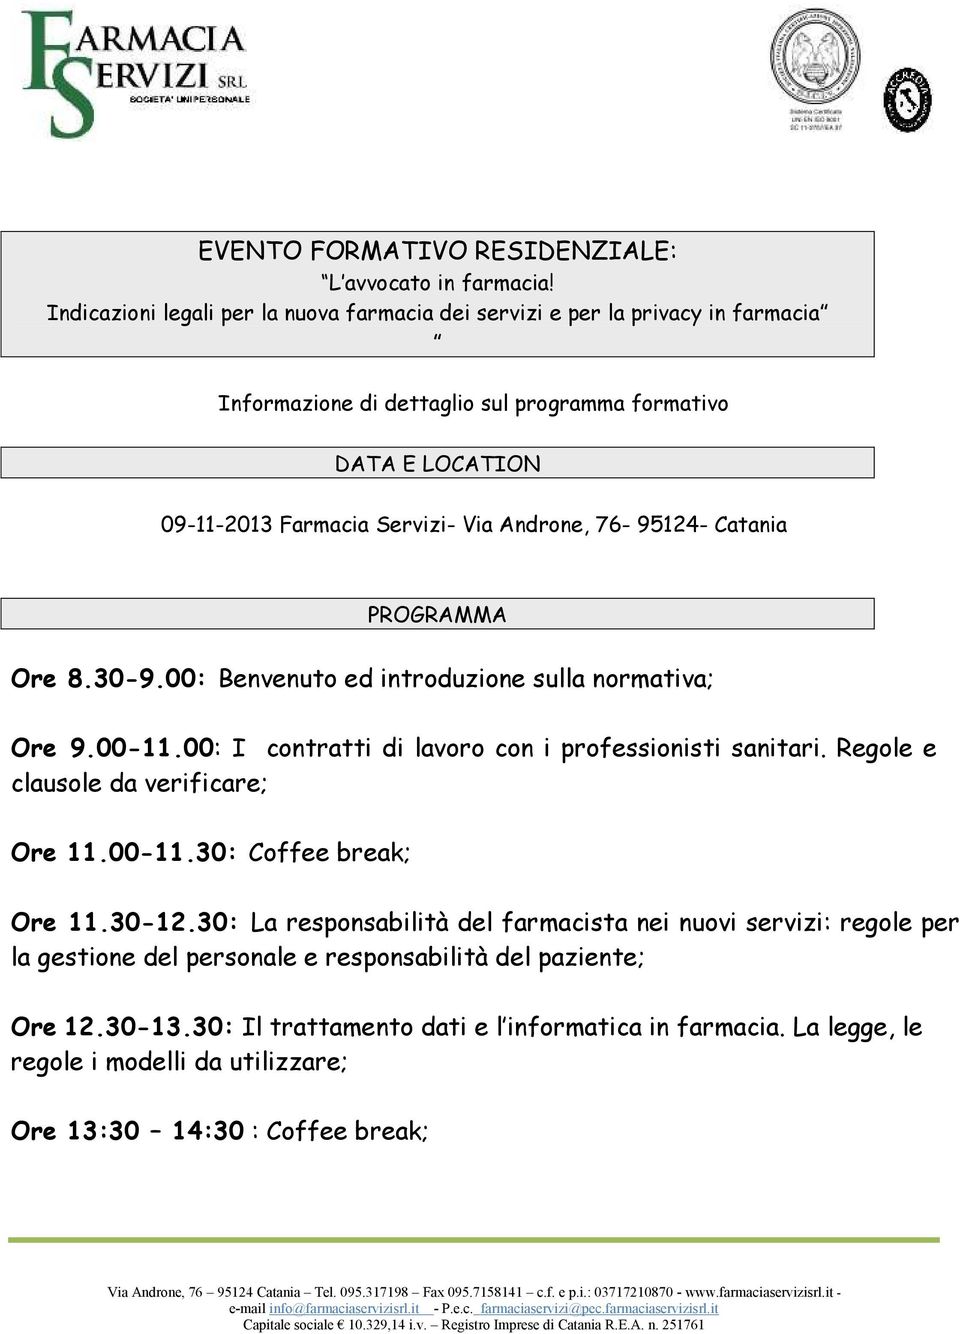 Androne, 76-95124- Catania PROGRAMMA Ore 8.30-9.00: Benvenuto ed introduzione sulla normativa; Ore 9.00-11.00: I contratti di lavoro con i professionisti sanitari.